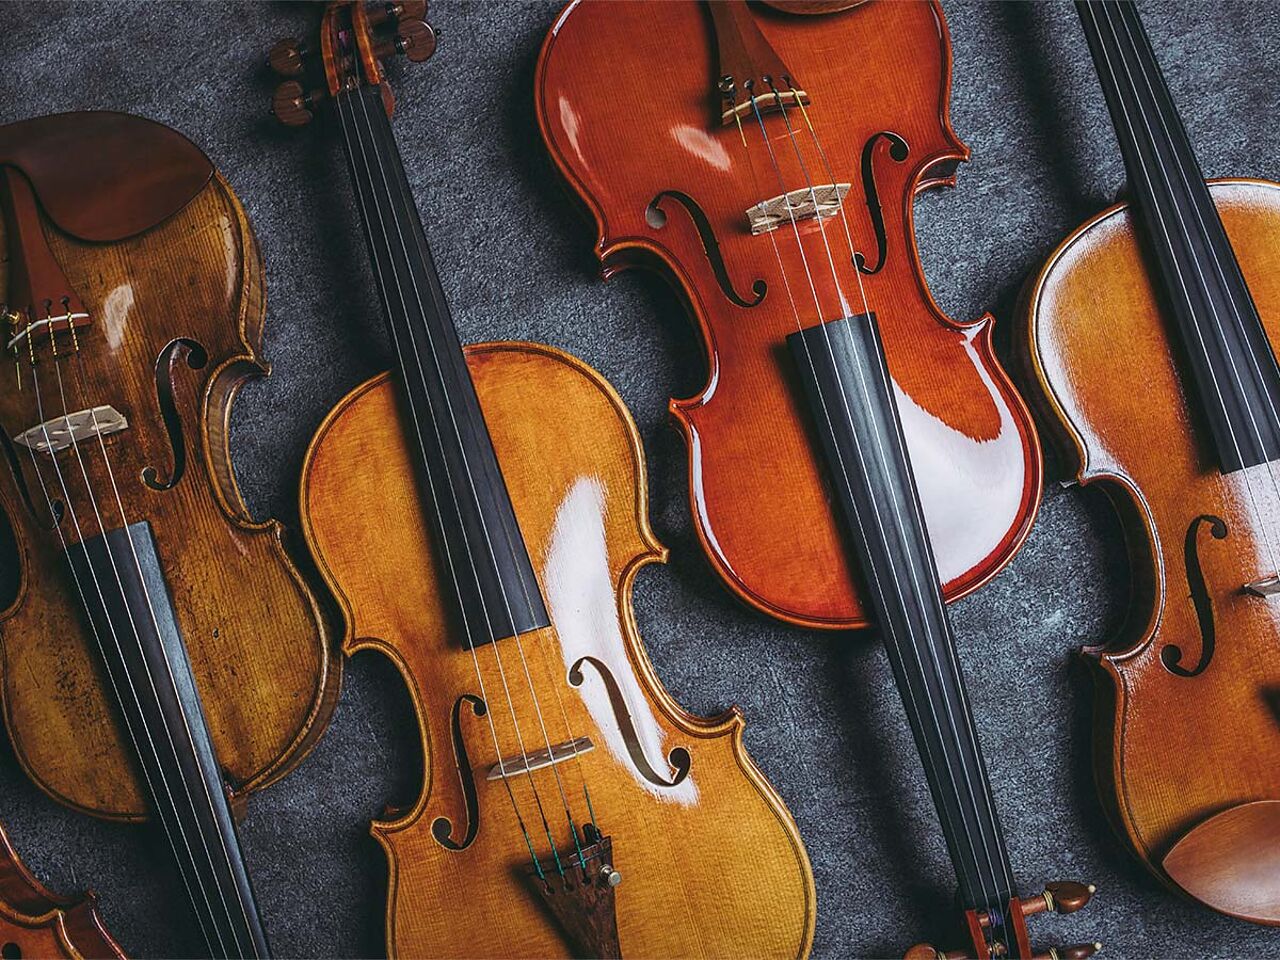 たくさんのバイオリンが並んでいる画像